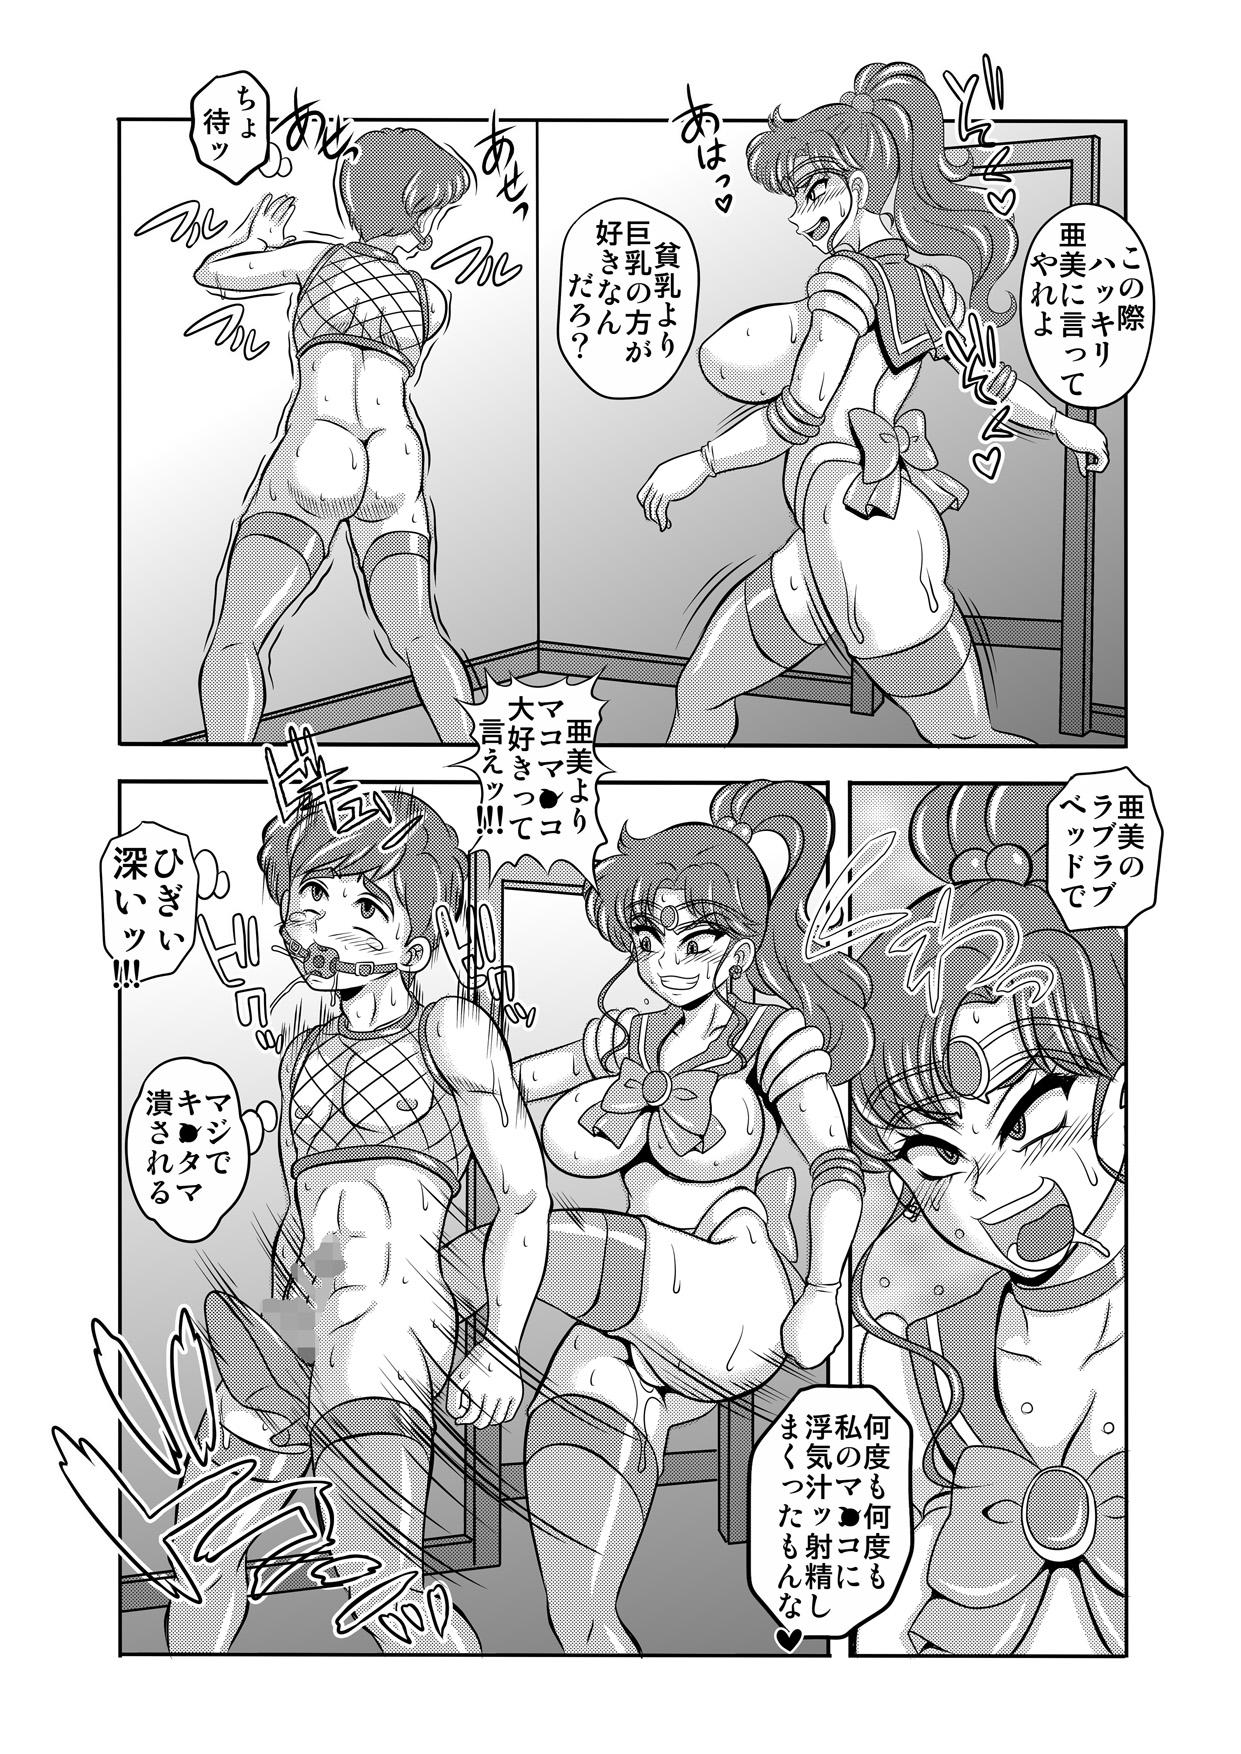 Best Blowjobs Ever Netori Netorare Toshiue Cosplayer-tachi no Yuuwaku 06 - Sailor moon Twistys - Page 12